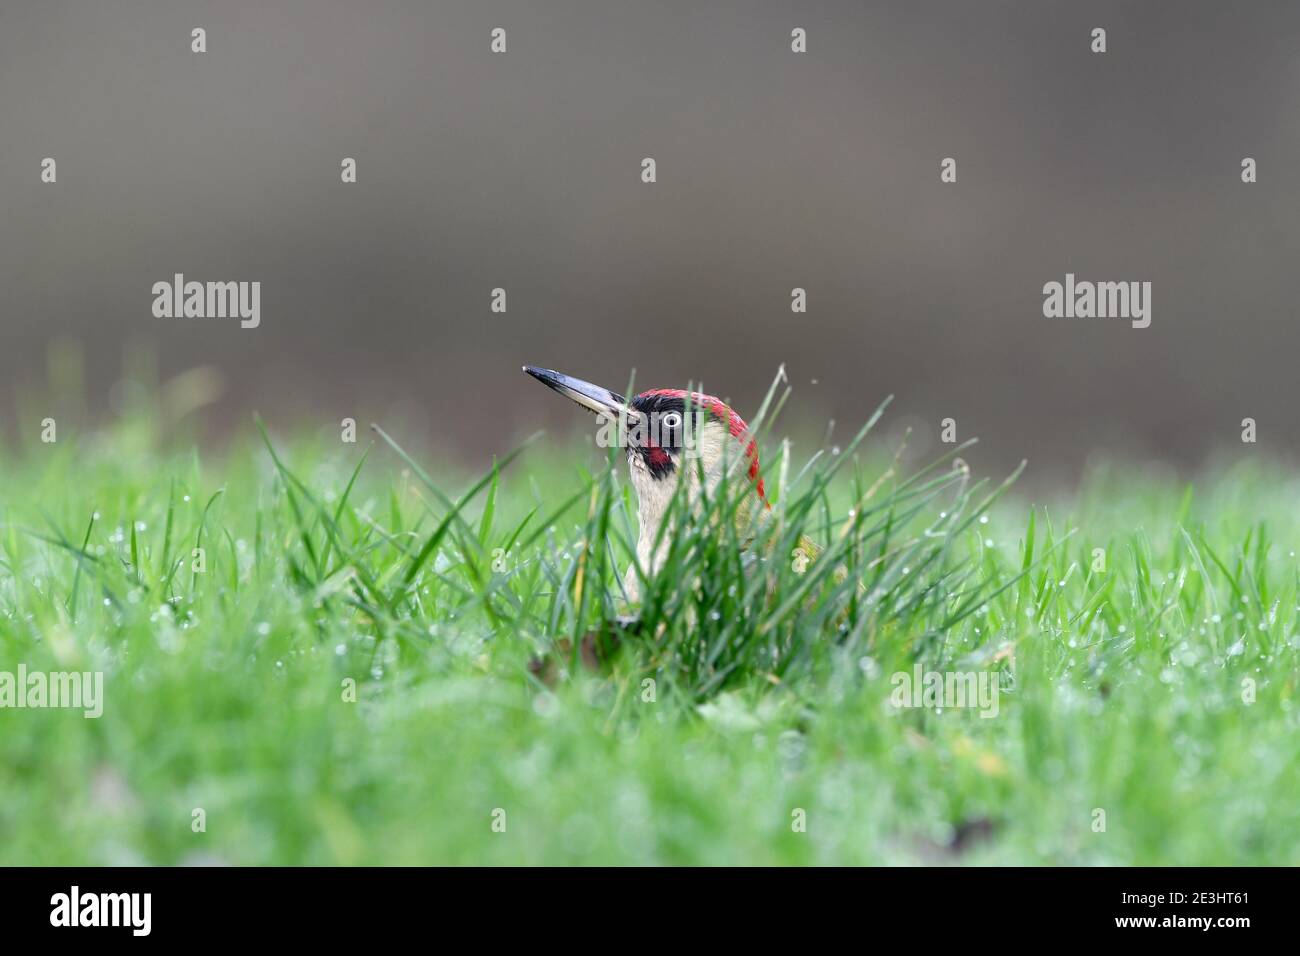 Verde Woodpecker (Picus viridis) macho en suelo de hierba, alimentándose con la fruta de pera caída, Gales, diciembre Foto de stock